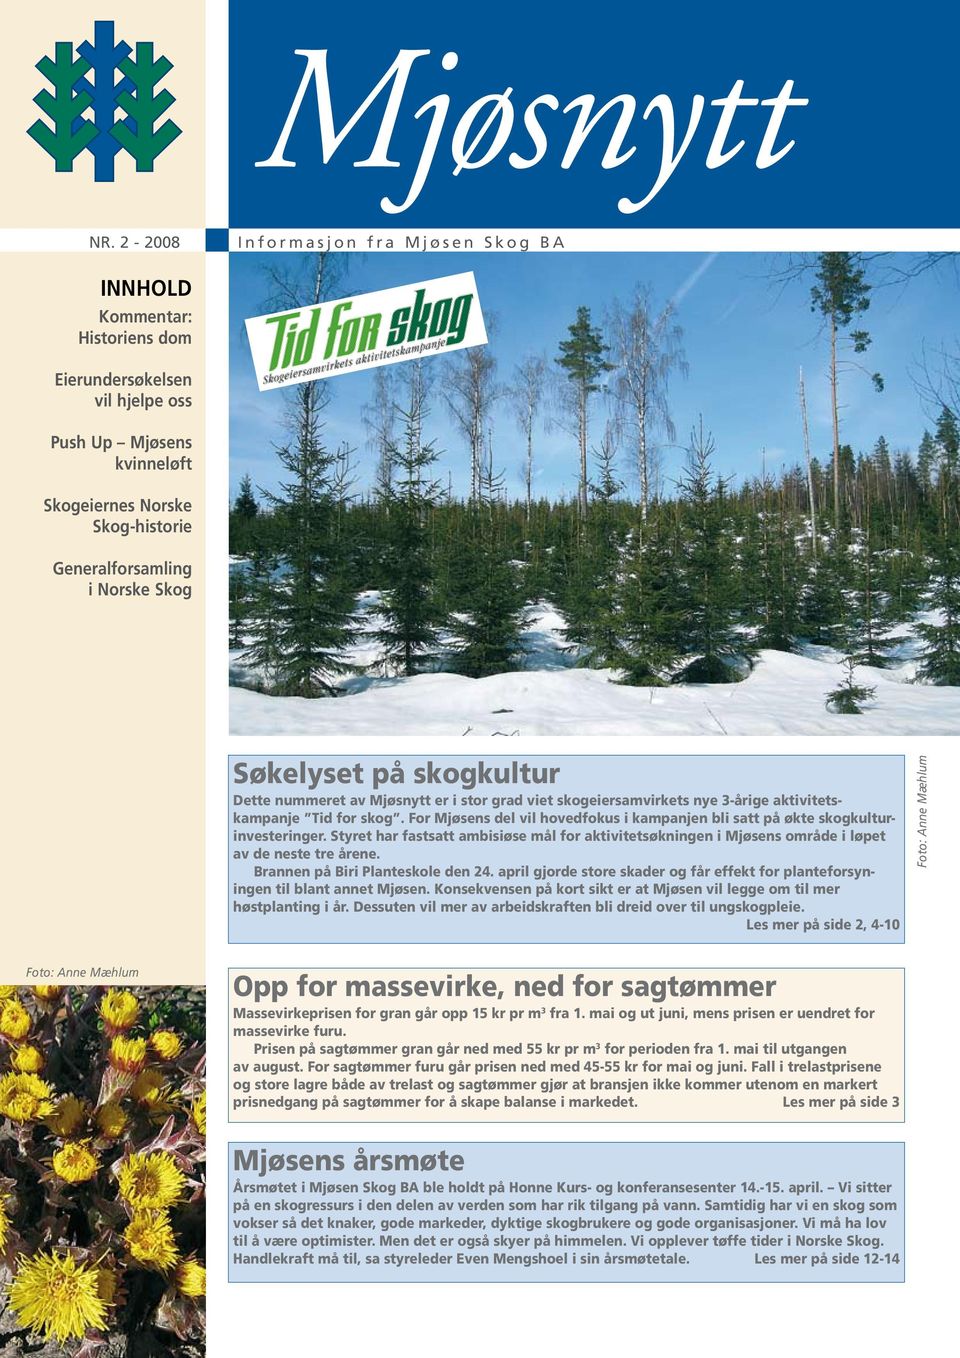 For Mjøsens del vil hovedfokus i kampanjen bli satt på økte skogkulturinvesteringer. Styret har fastsatt ambisiøse mål for aktivitetsøkningen i Mjøsens område i løpet av de neste tre årene.